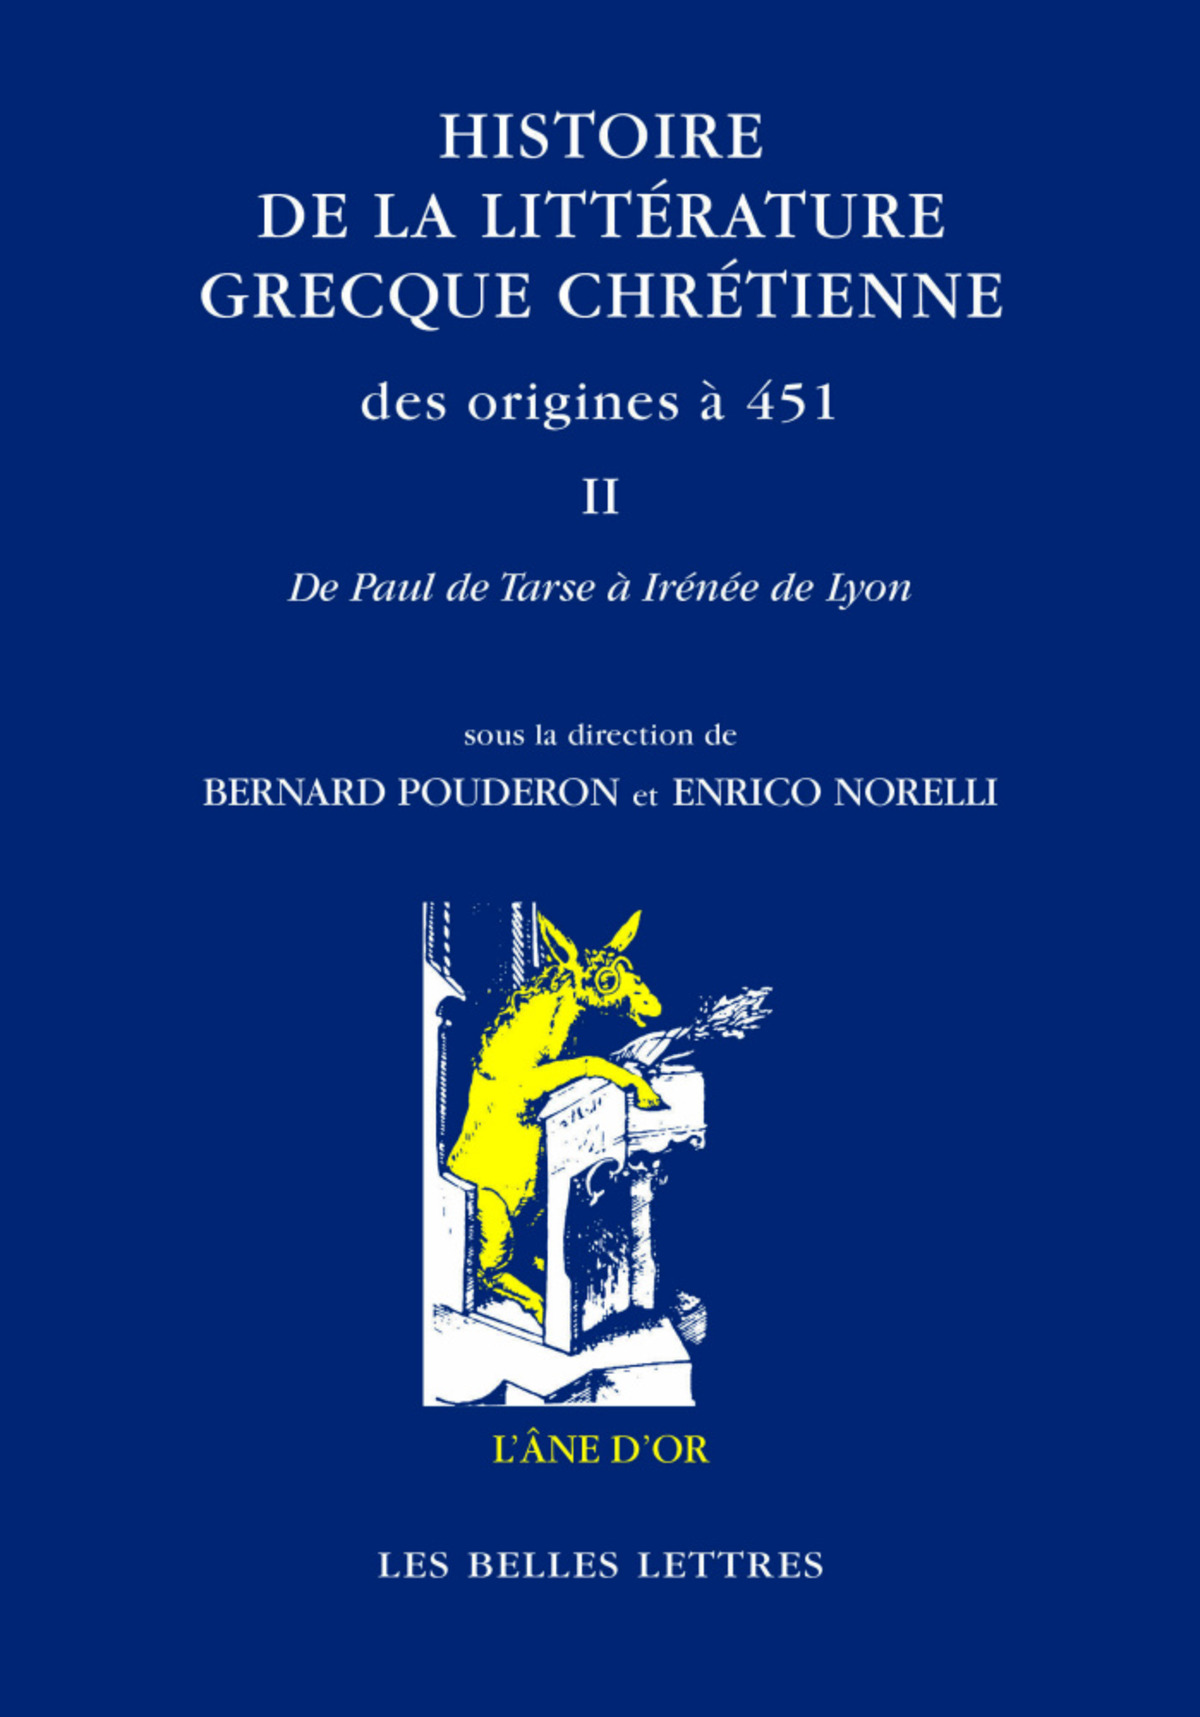 Histoire de la littérature grecque chrétienne des origines à 451, T. II